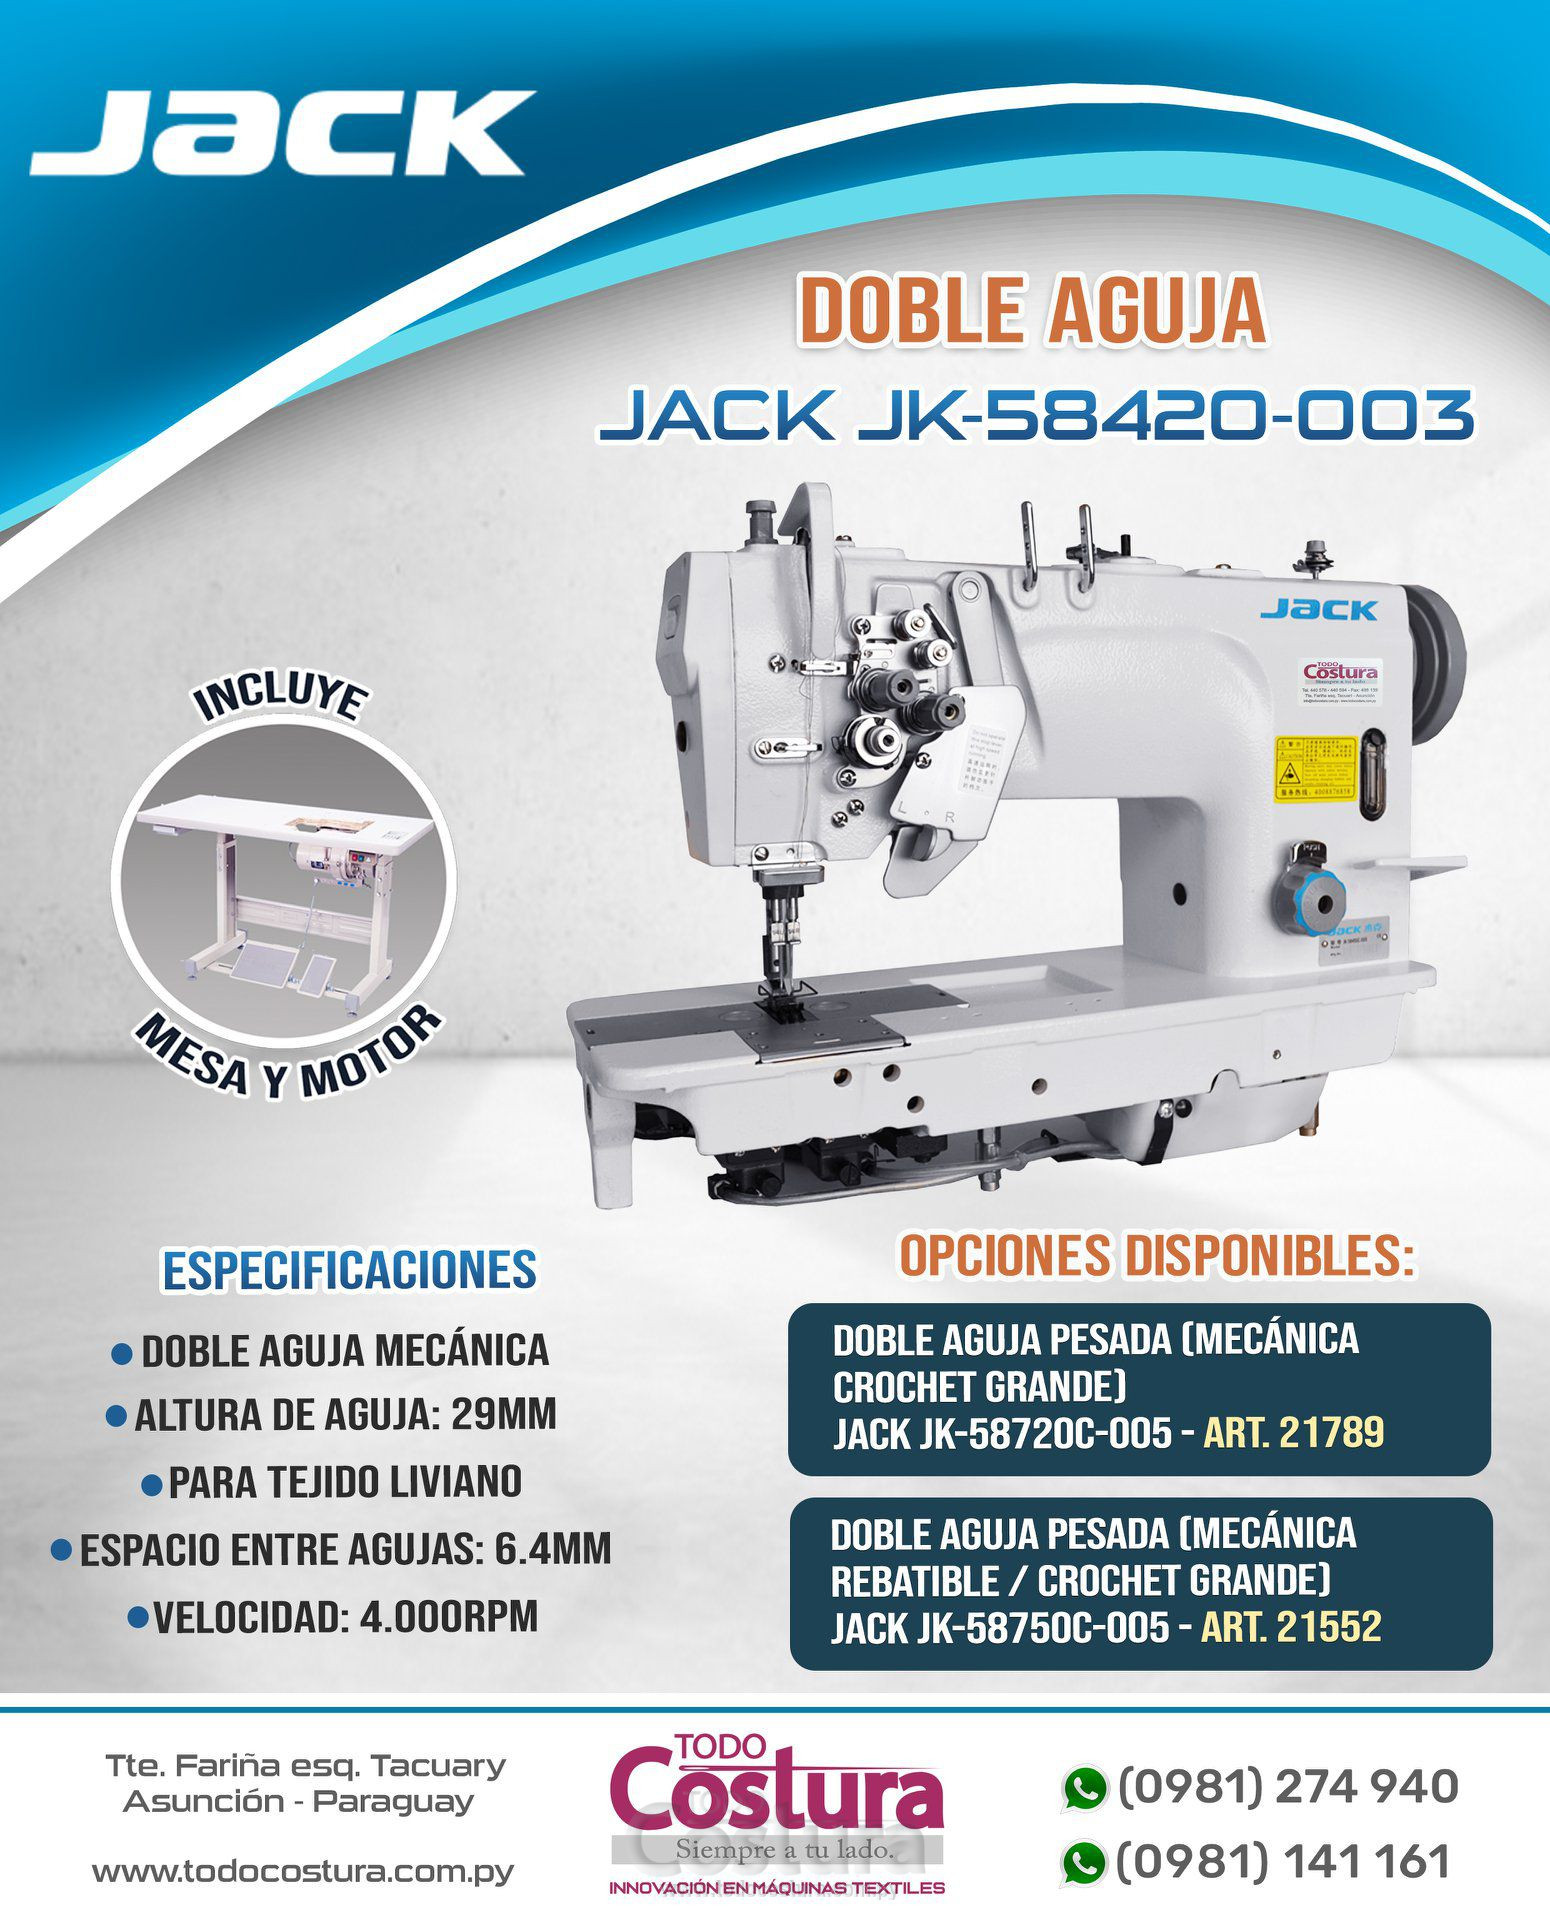 DOBLE AGUJA PESADA (MECANICA - REBATIBLE - CROCHET GRANDE) JACK JK-58750C-005